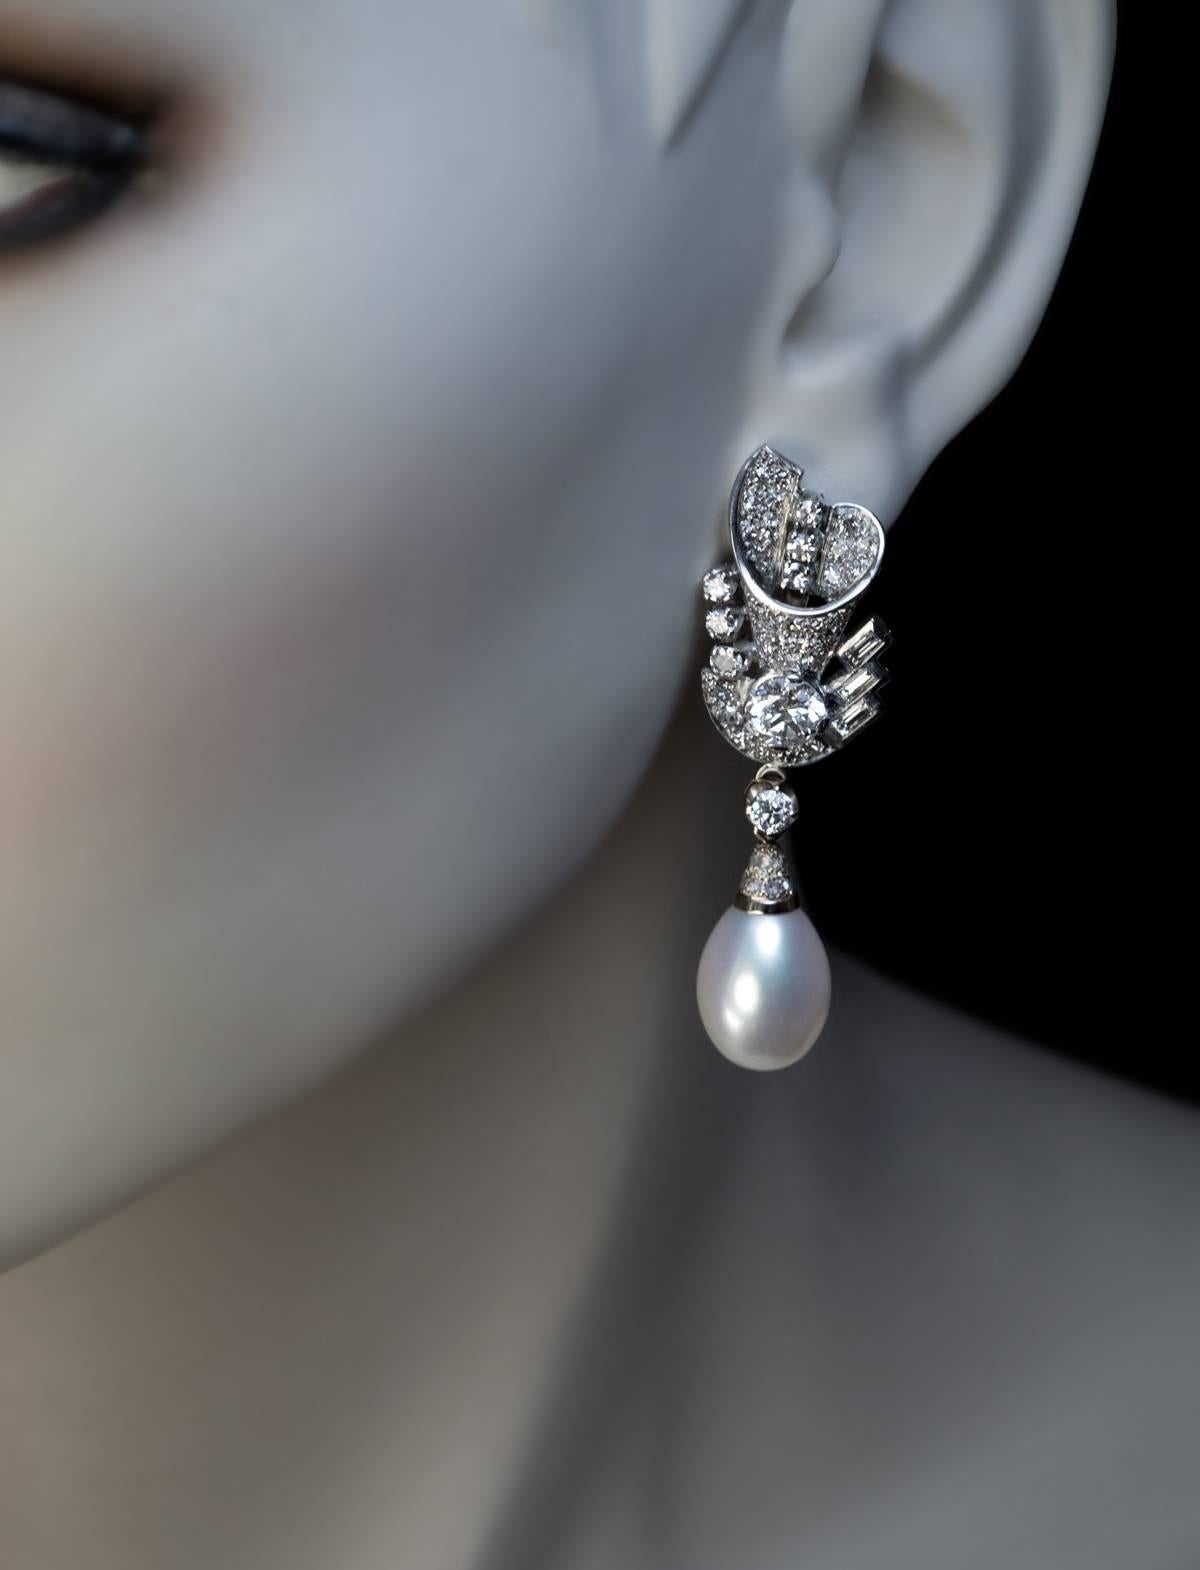 Spätes Art déco, um 1940
Diese prächtigen Ohrringe sind aus weißem und blassgelbem 14-karätigem Gold gefertigt und mit alten europäischen Diamanten im Einzel-, Baguette- und Altrosaschliff besetzt. Die beiden Hauptdiamanten sind strahlend weiße und